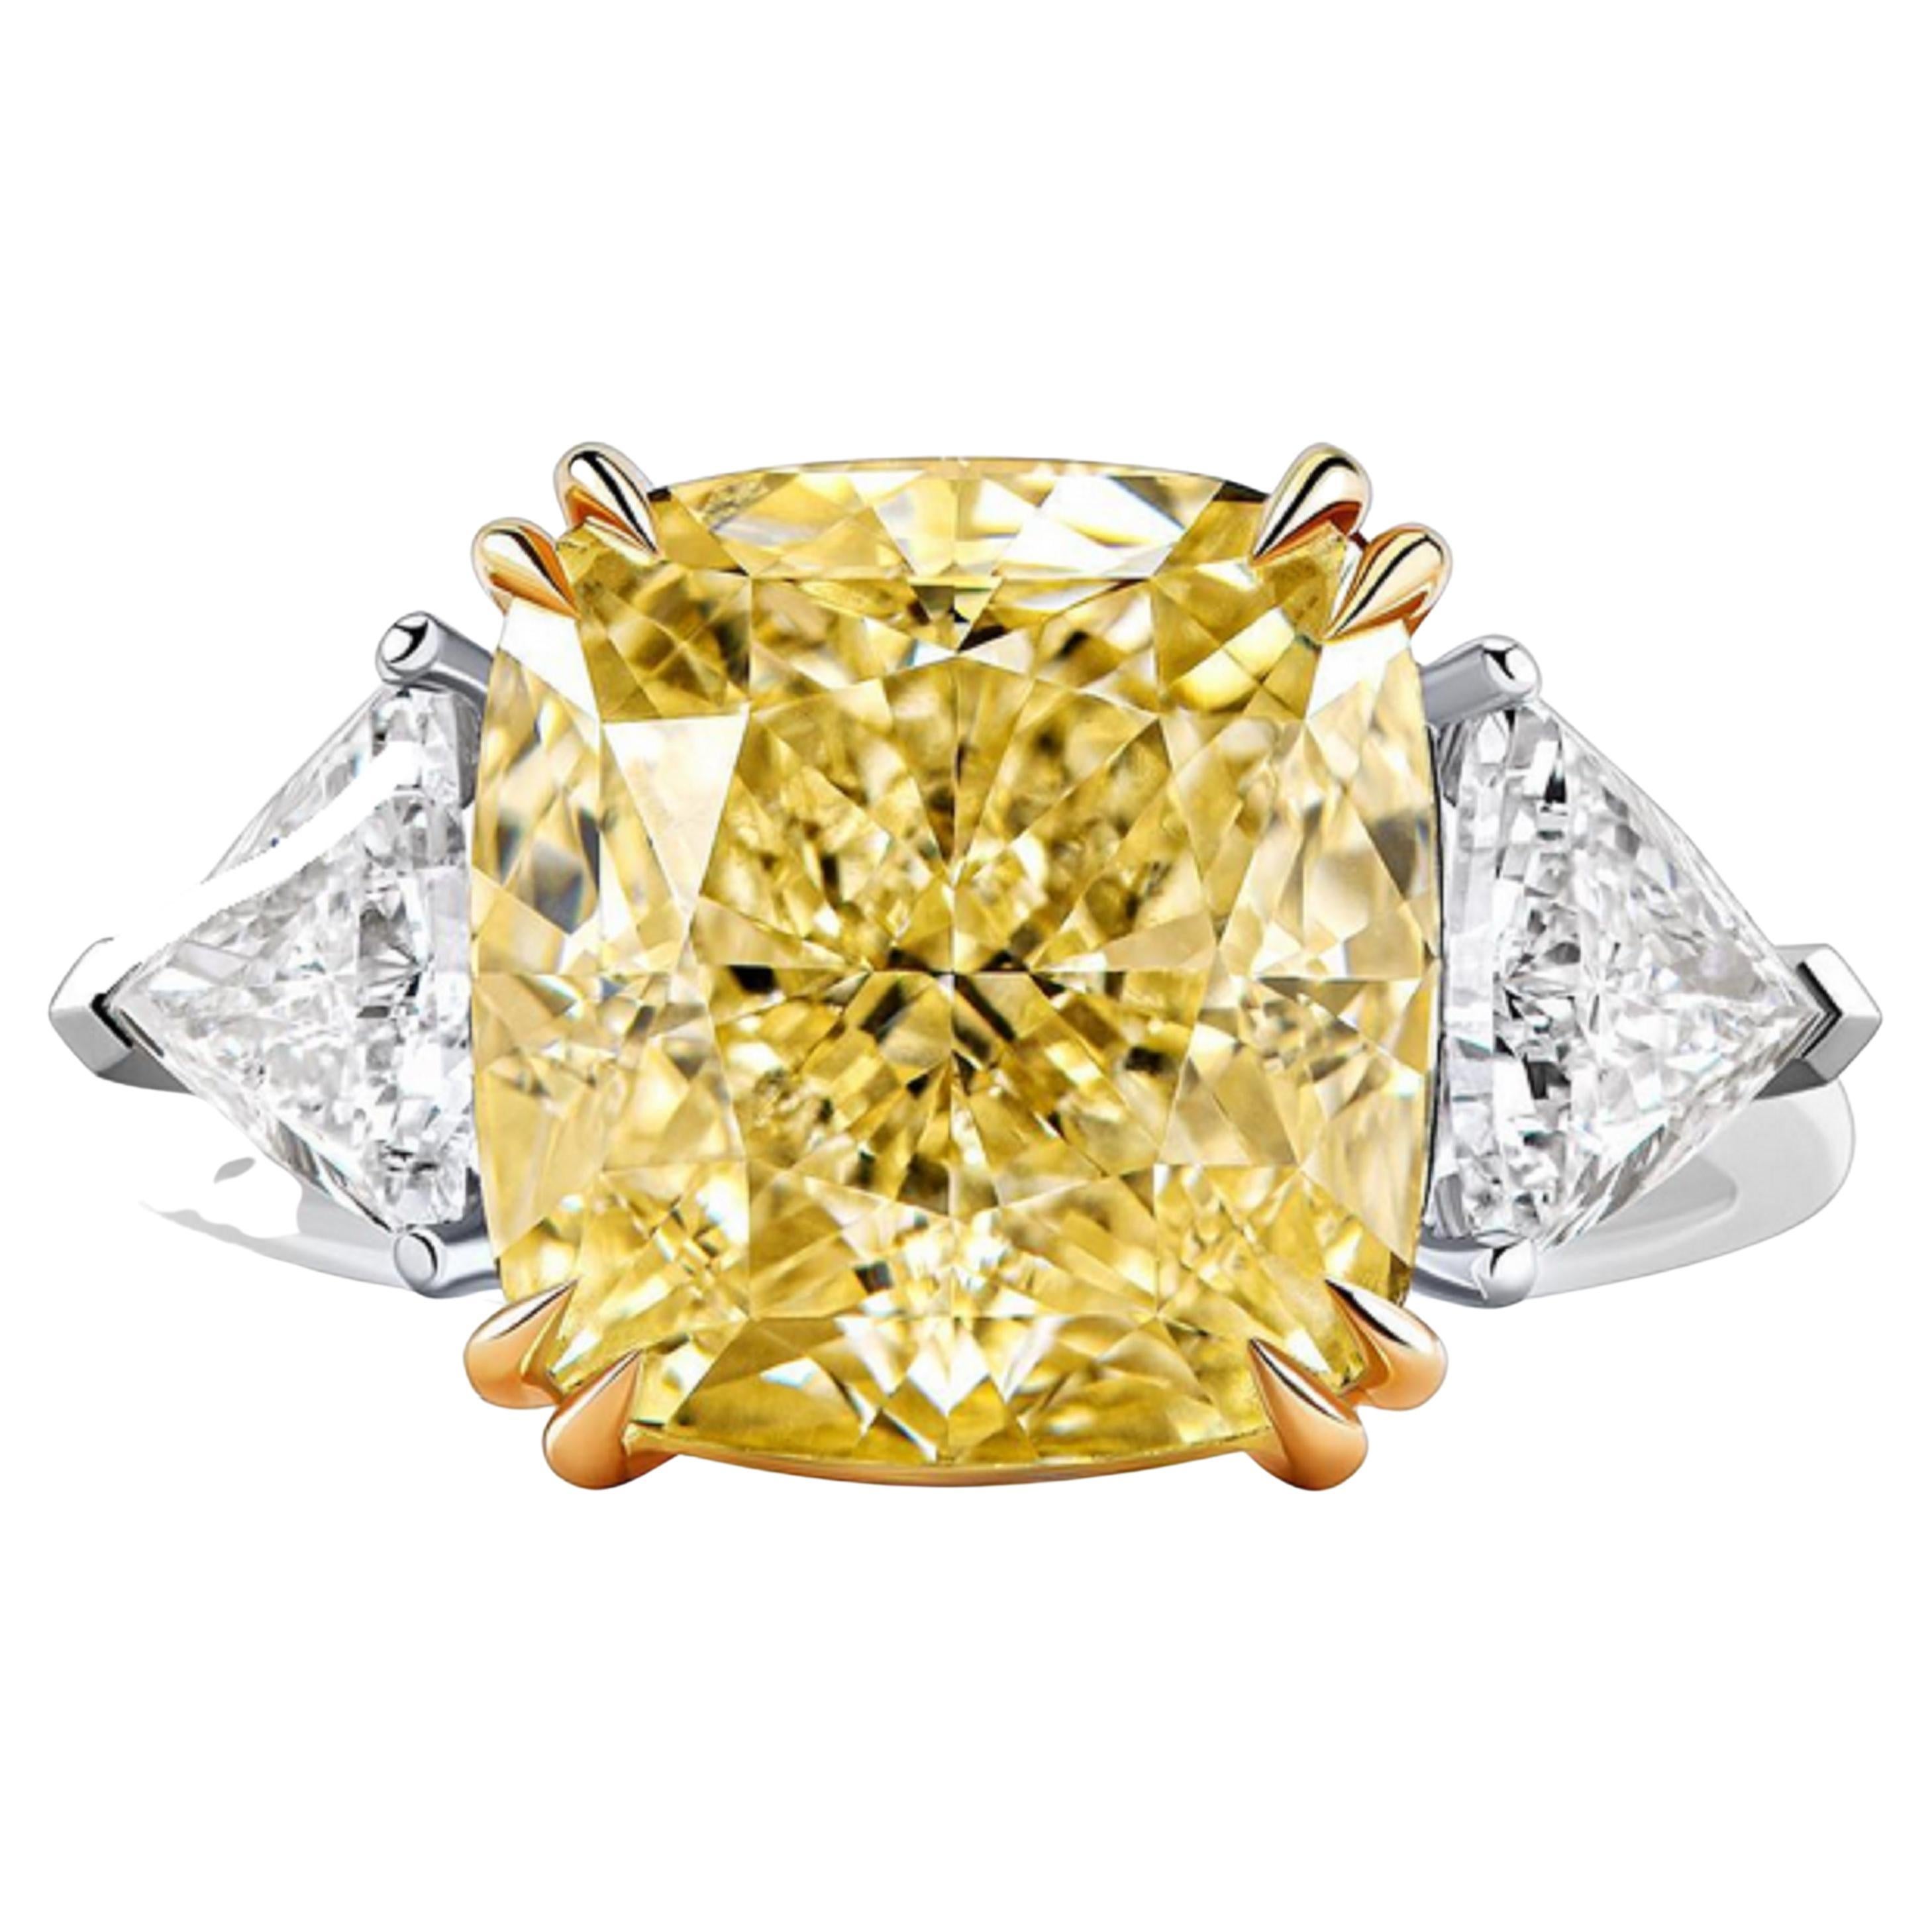  EXCEPTIONNELLE Bague certifiée GIA de 5 carats de diamant jaune intense fantaisie.

Faites-vous remarquer avec cette pièce à couper le souffle, ornée d'un magnifique diamant jaune de 5 carats certifié par le prestigieux Gemological Institute of